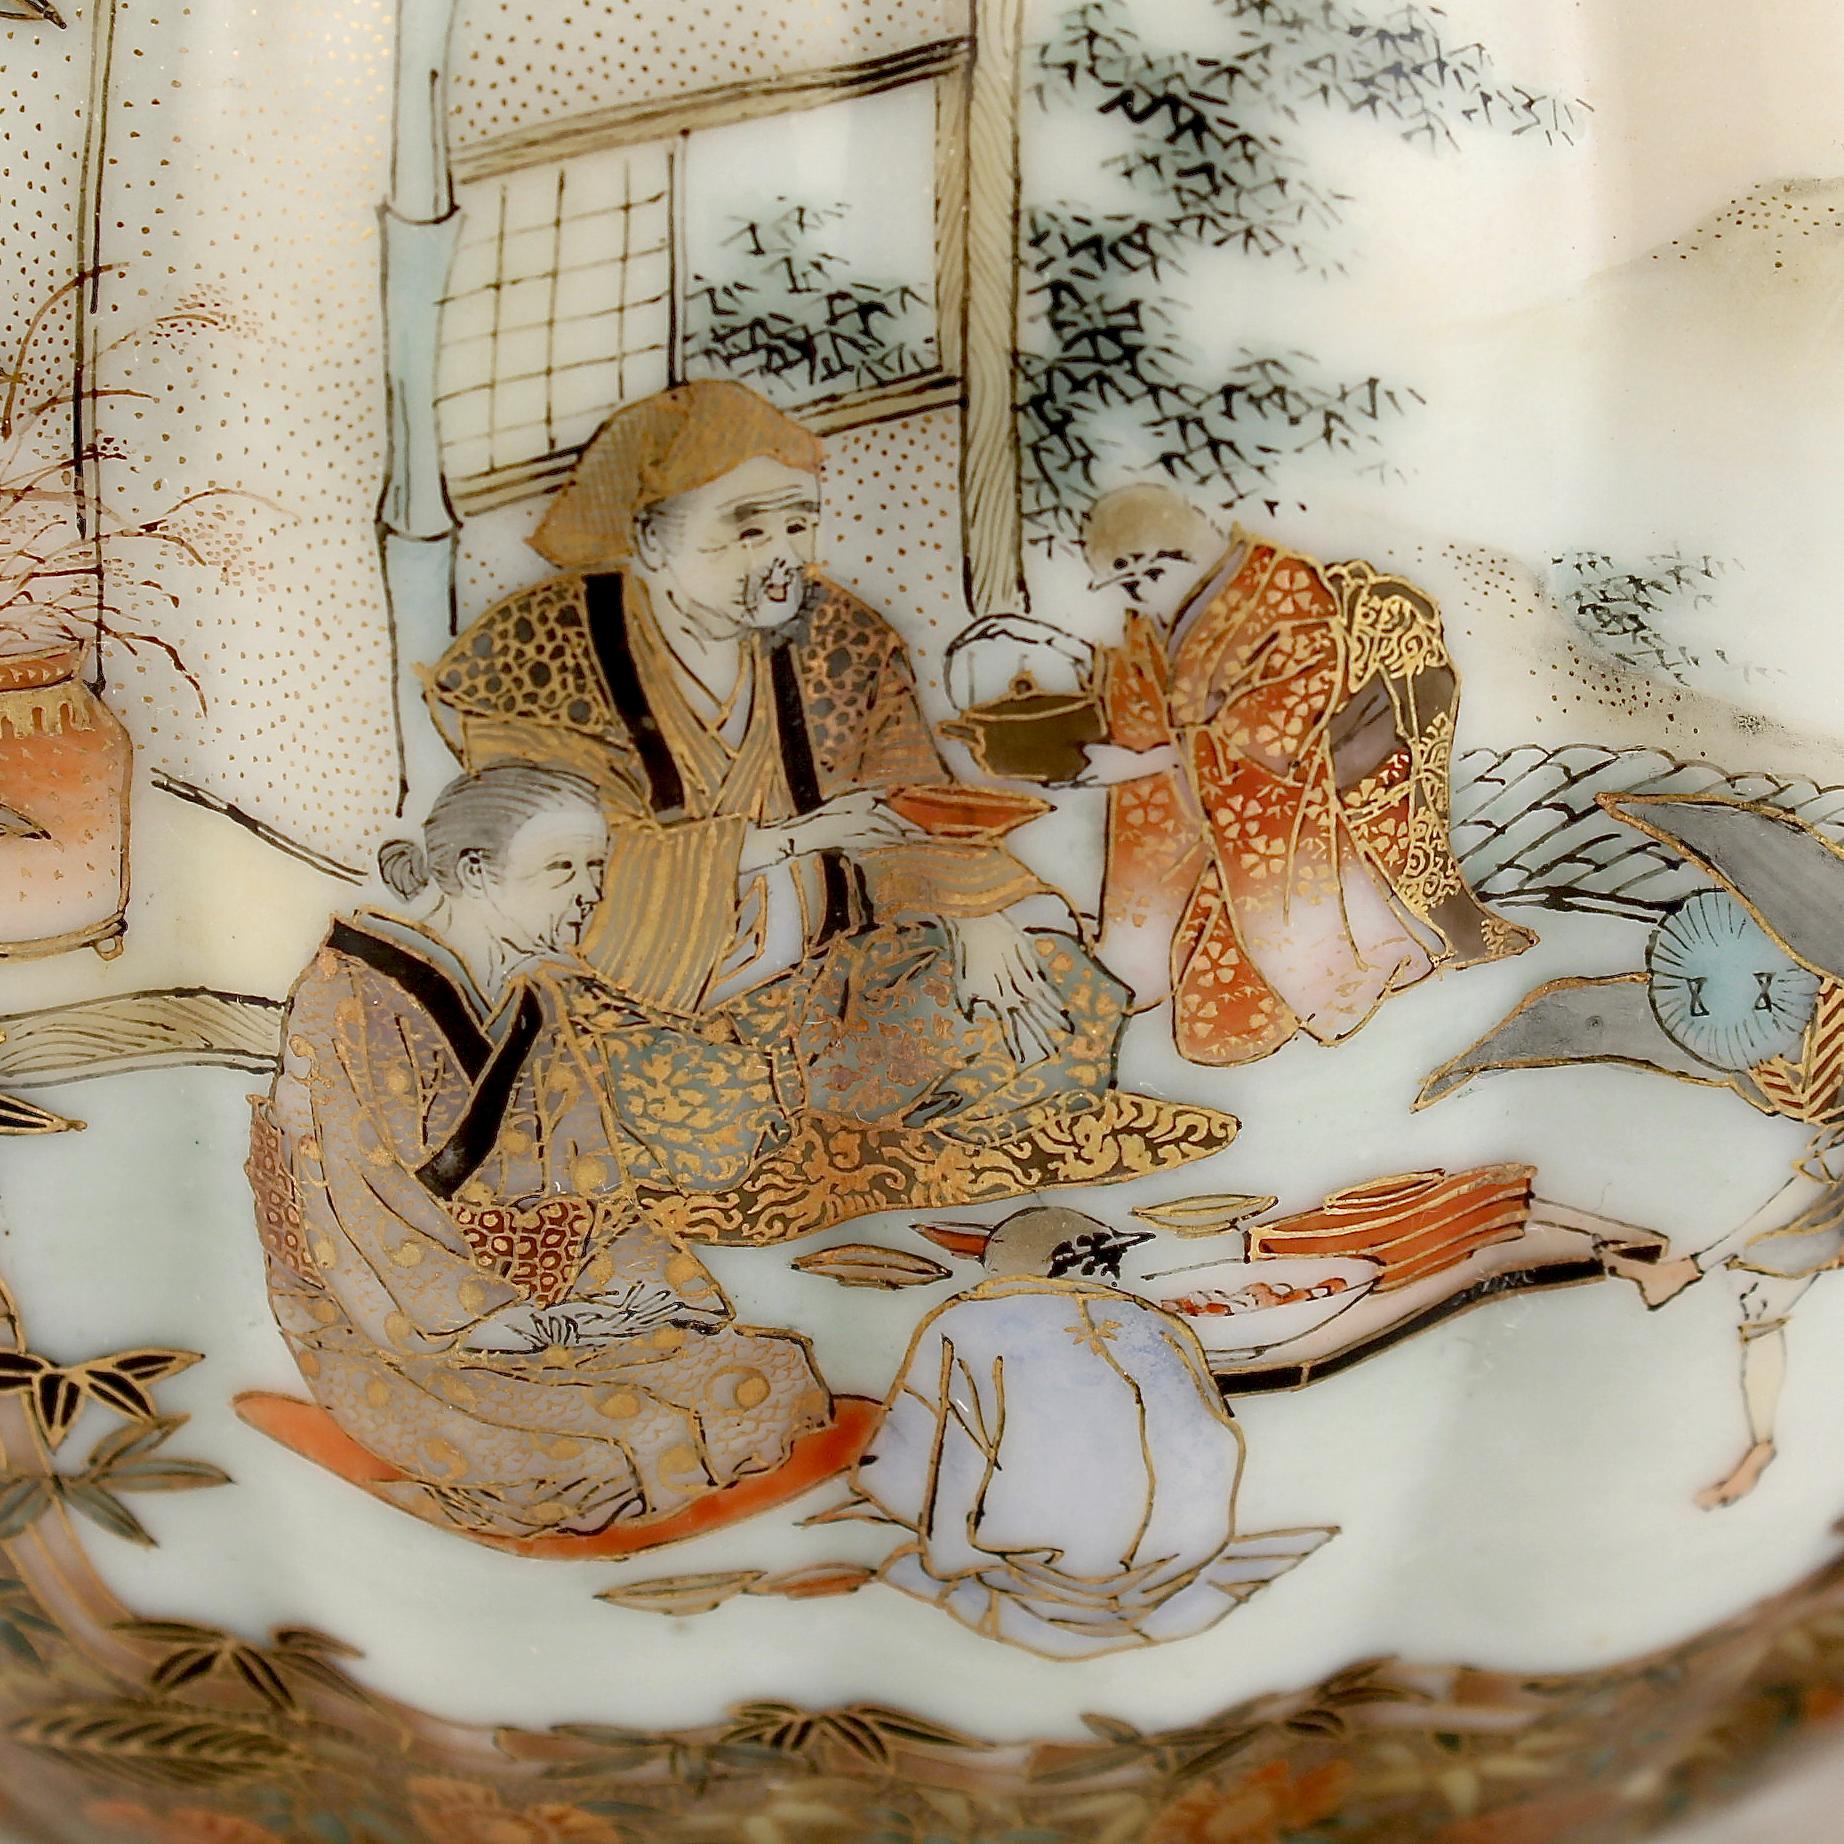 Old or Antique Signed Japanese Satsuma-Style Kutani Porcelain Teapot  1